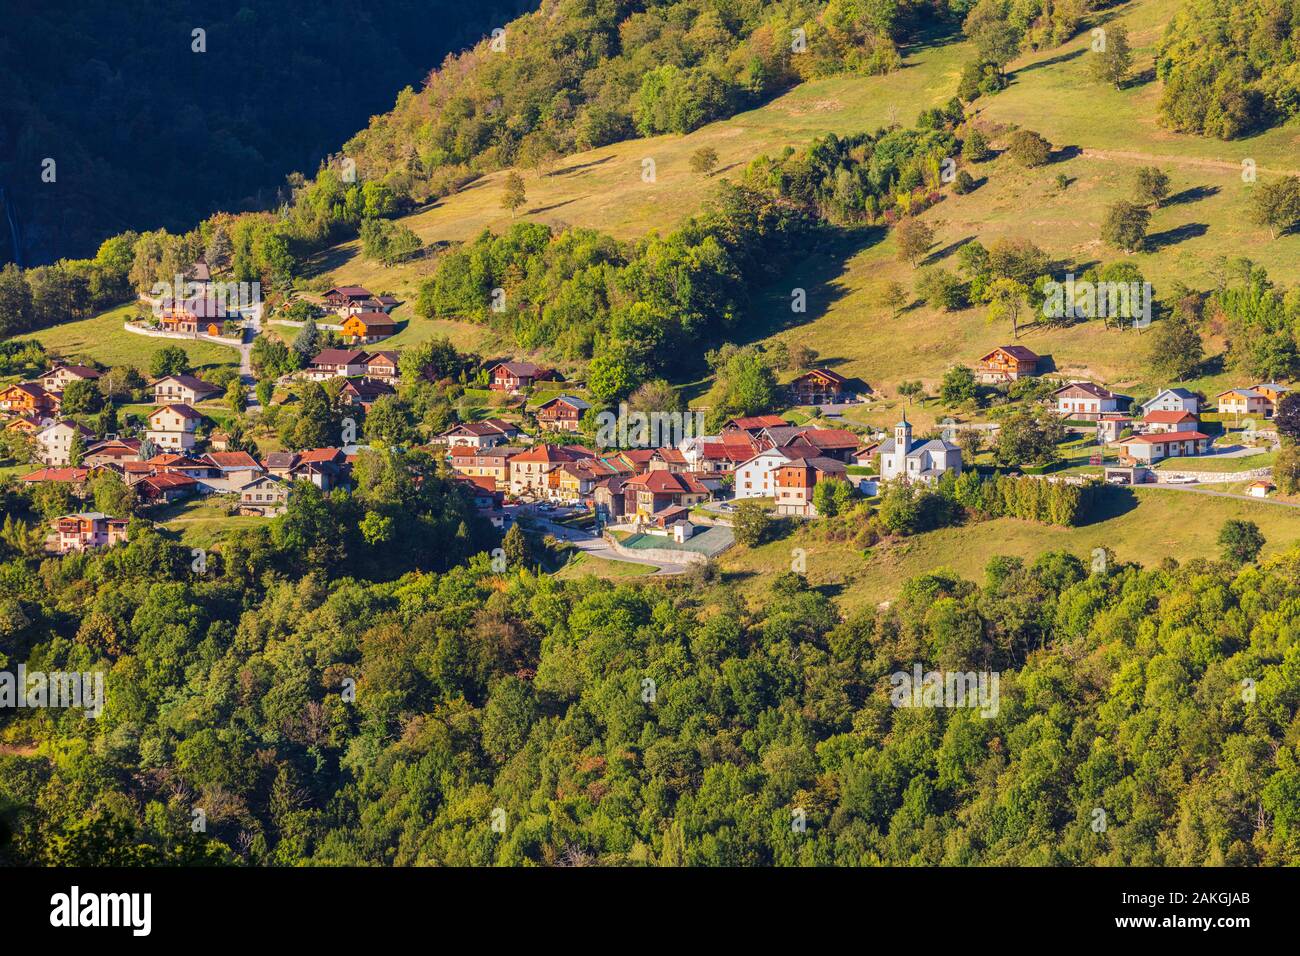 Francia, Savoie, Grand-Aigueblanche, Saint Oyen, valle de Tarentaise Foto de stock